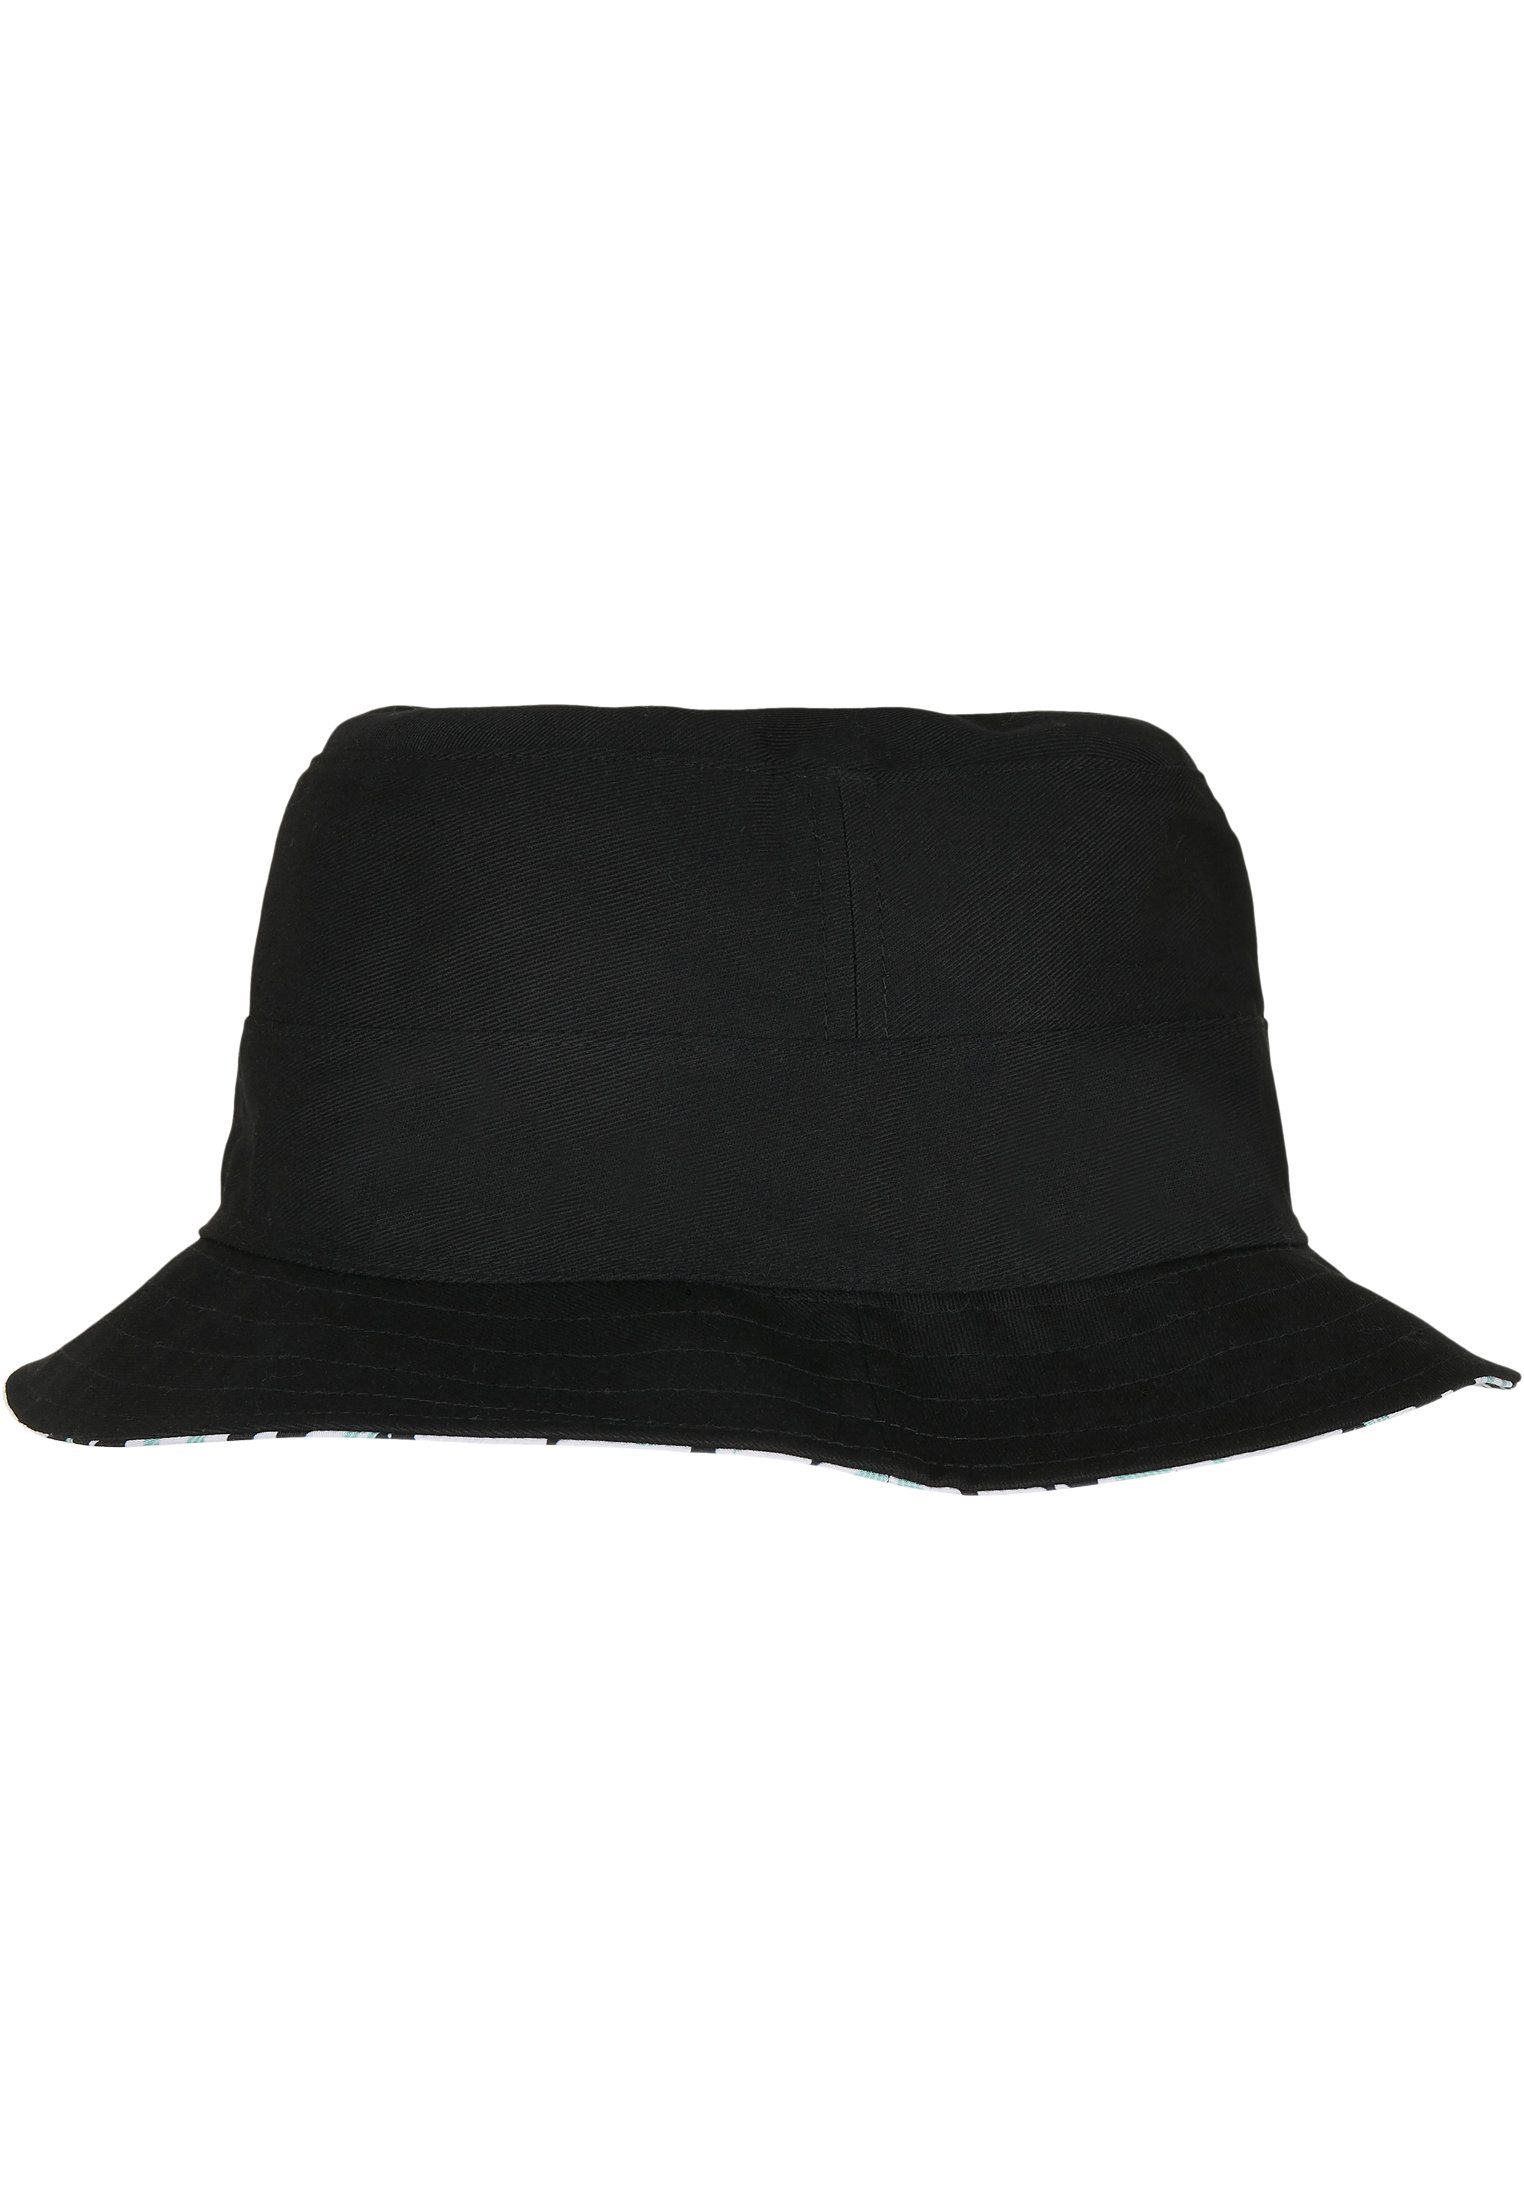 CAYLER & SONS Flex Cap Hat Aztec Bucket C&S WL Reversible Summer